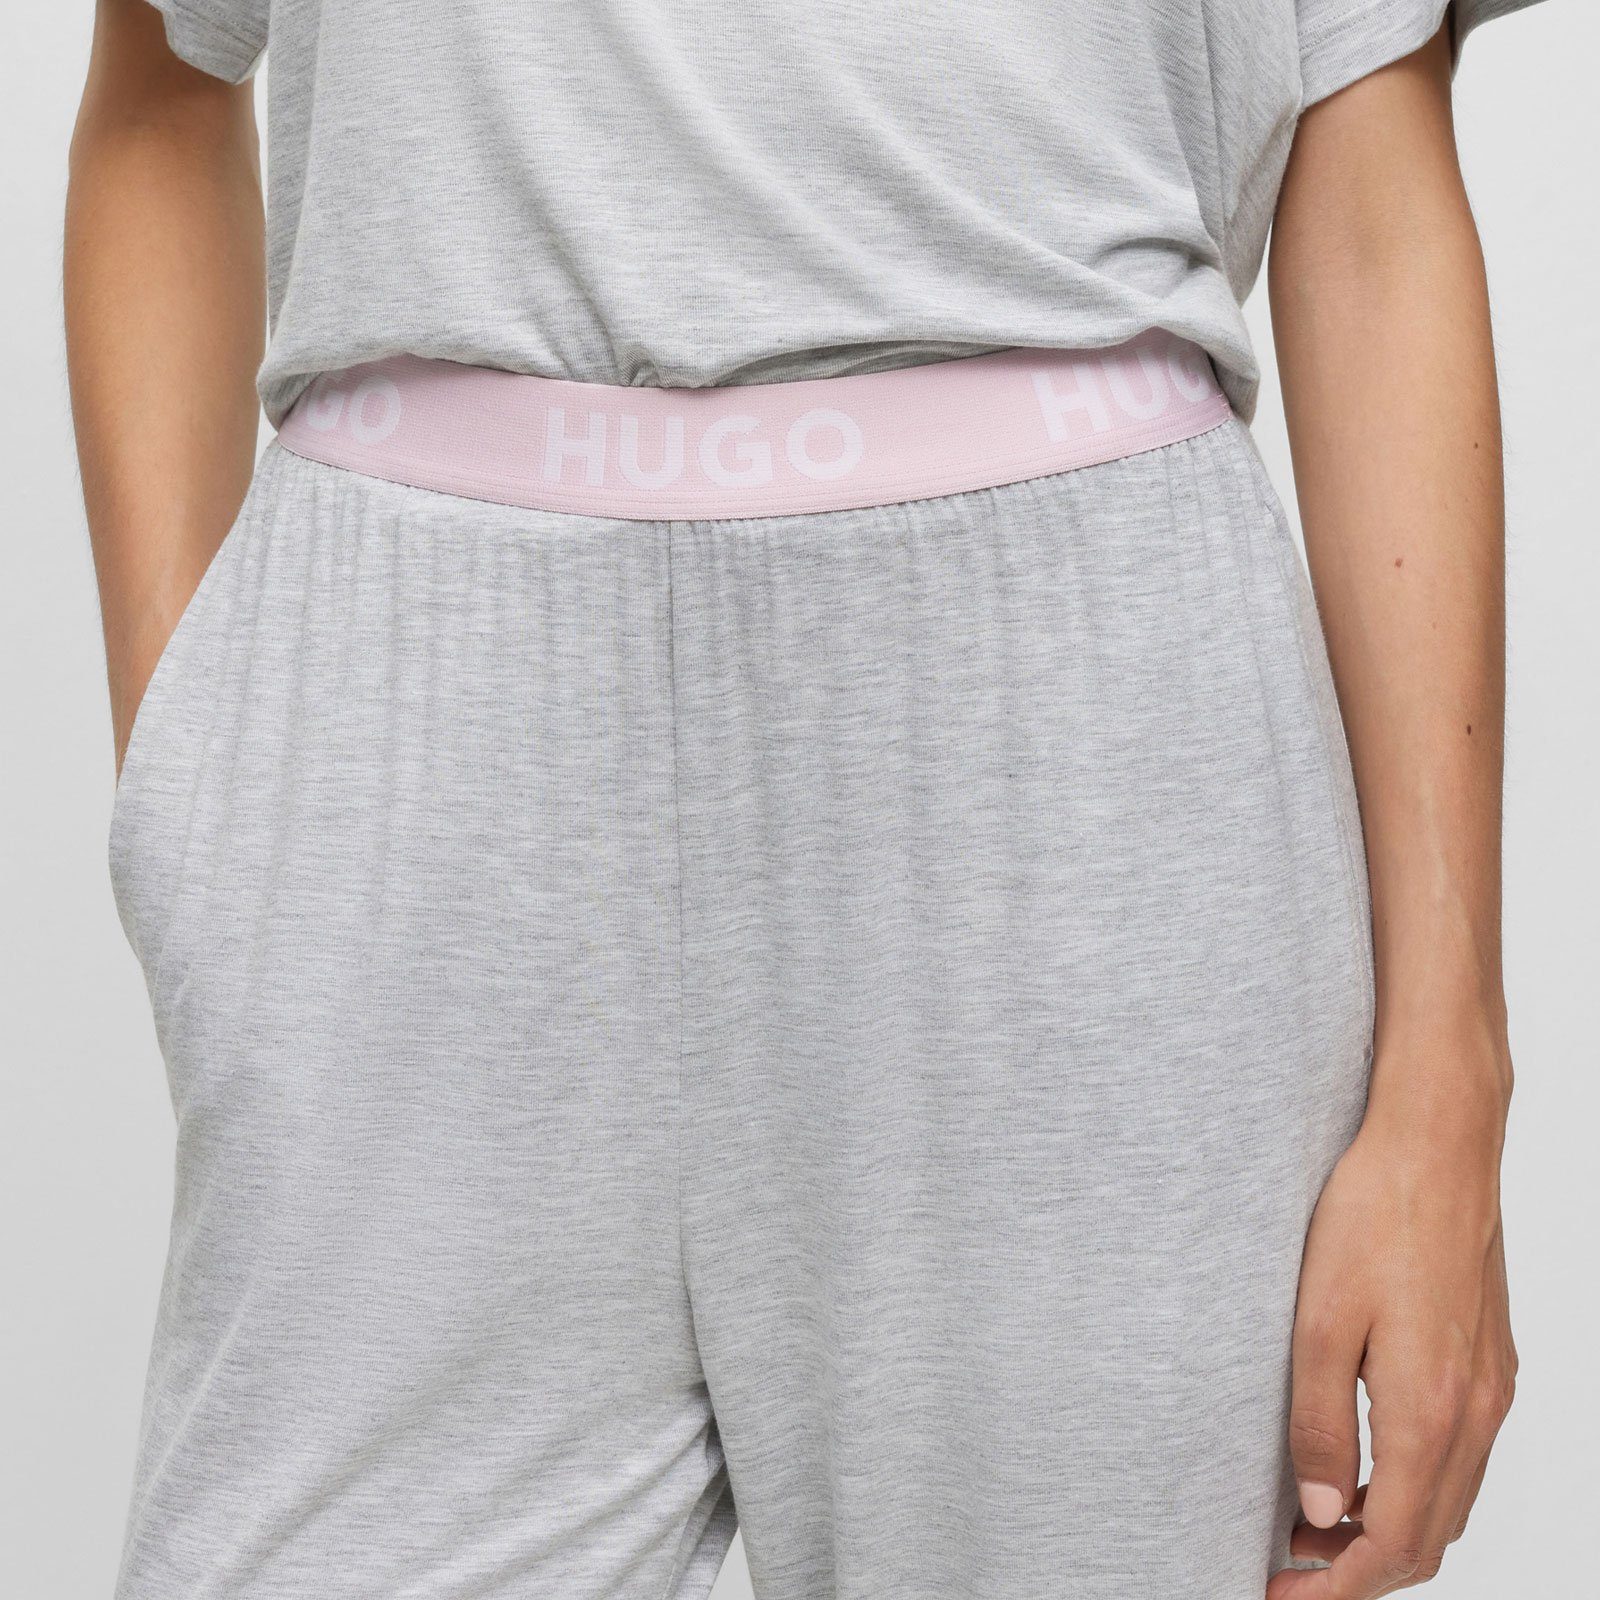 Unite sichtbarem Pyjamahose grey Marken-Logos mit HUGO Bund Pants 035 mit